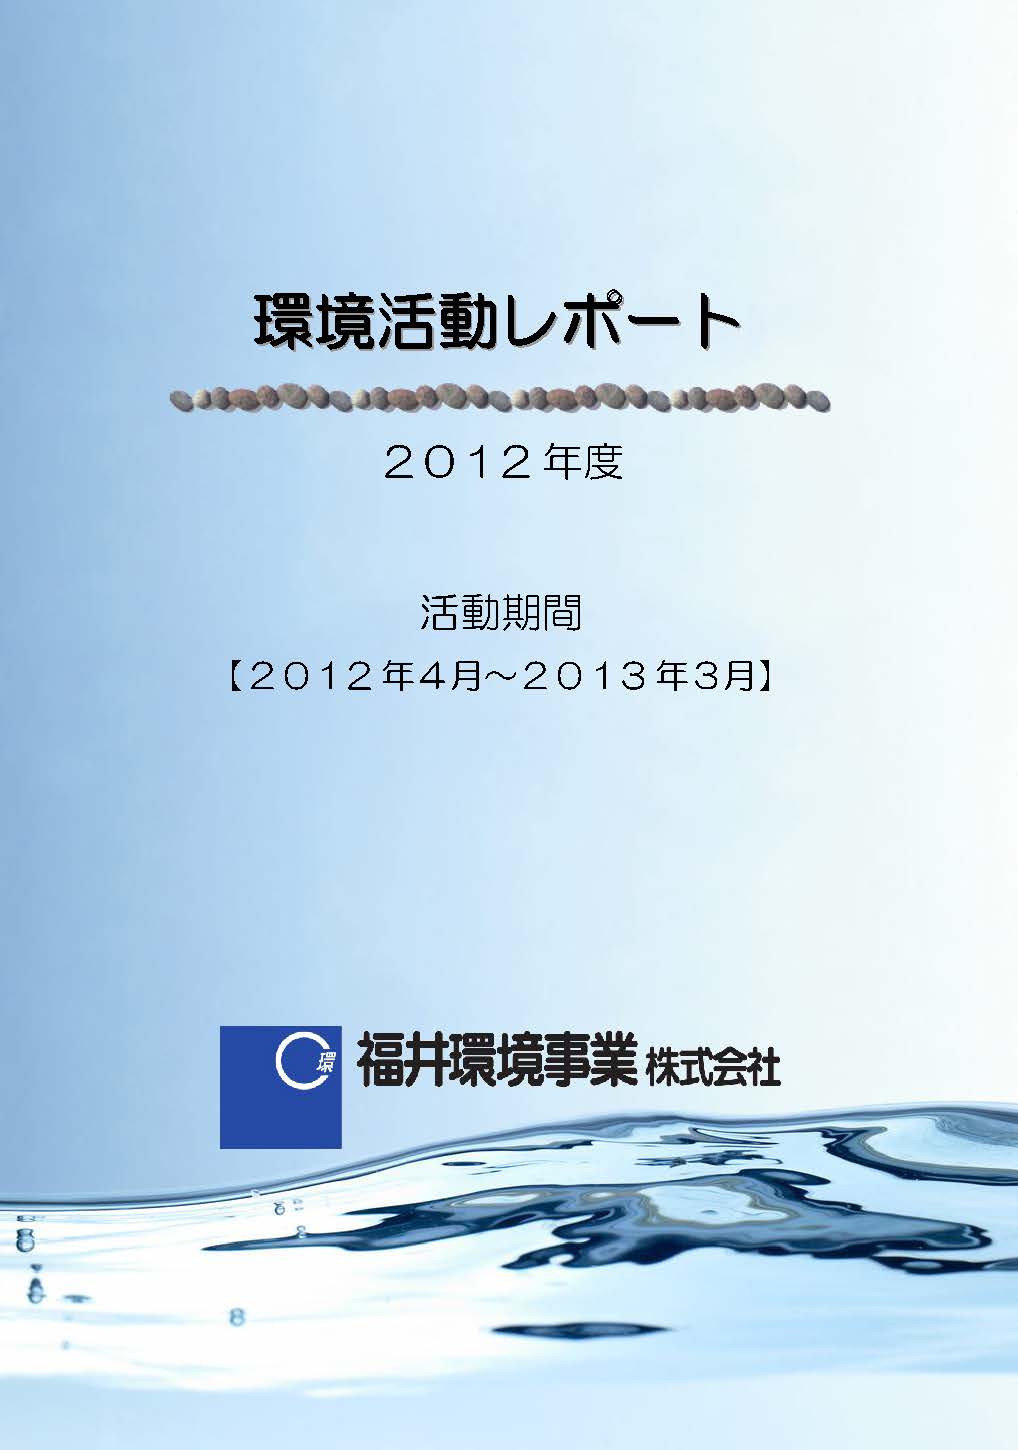 「環境への取り組みのご紹介」で環境活動レポート2012版を公開しました。